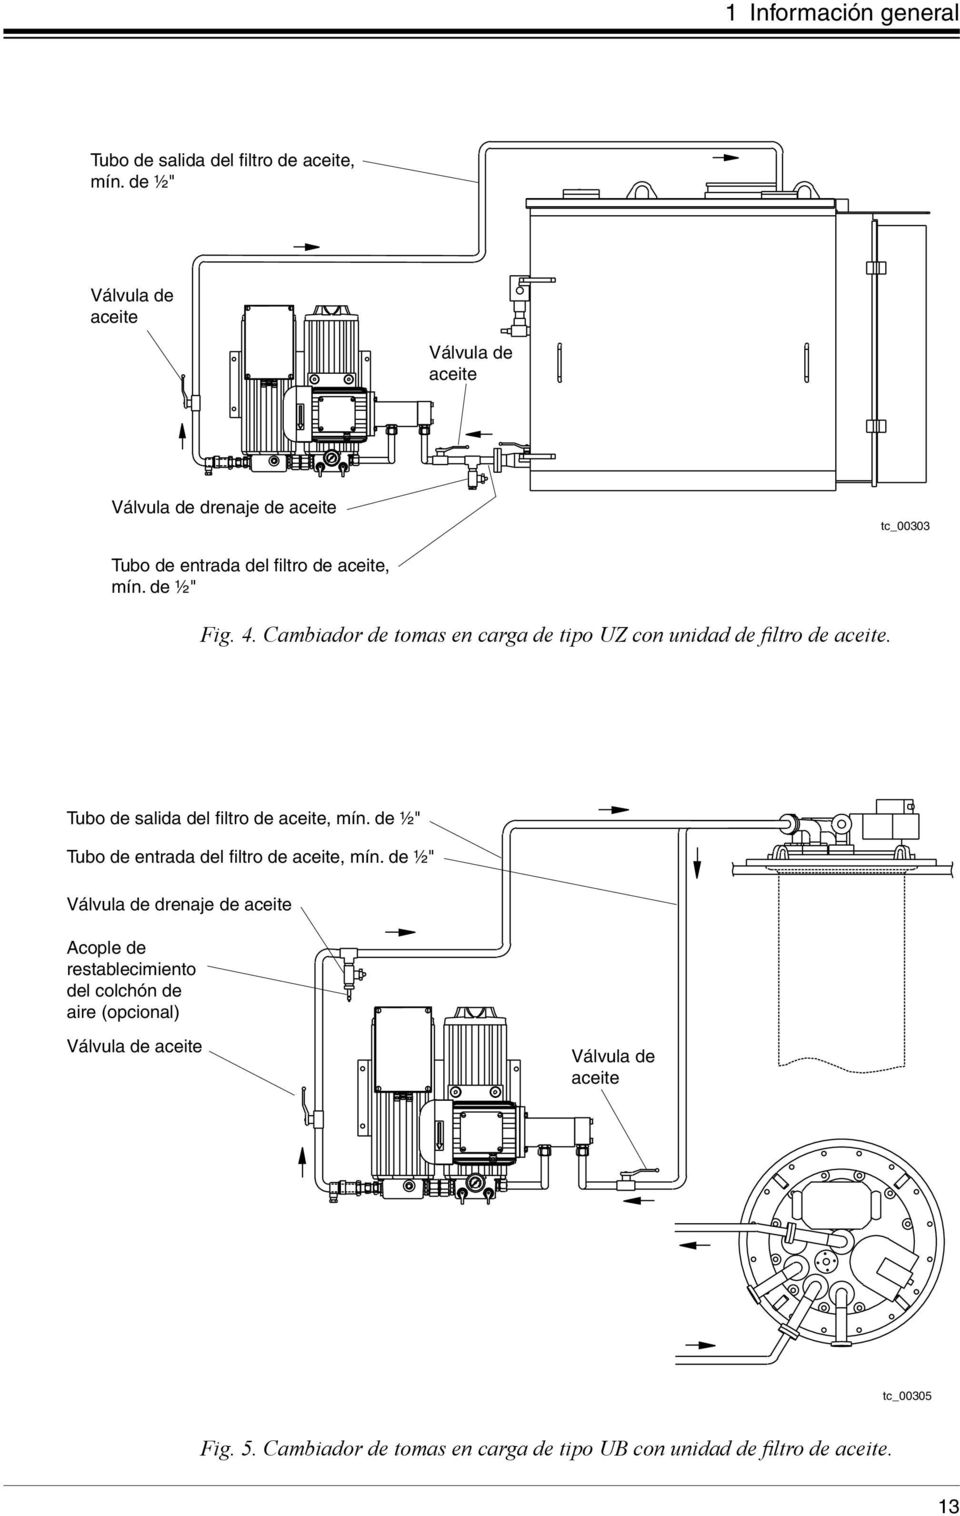 Cambiador de tomas en carga de tipo UZ con unidad de filtro de aceite. Tubo de salida del filtro de aceite, mín.